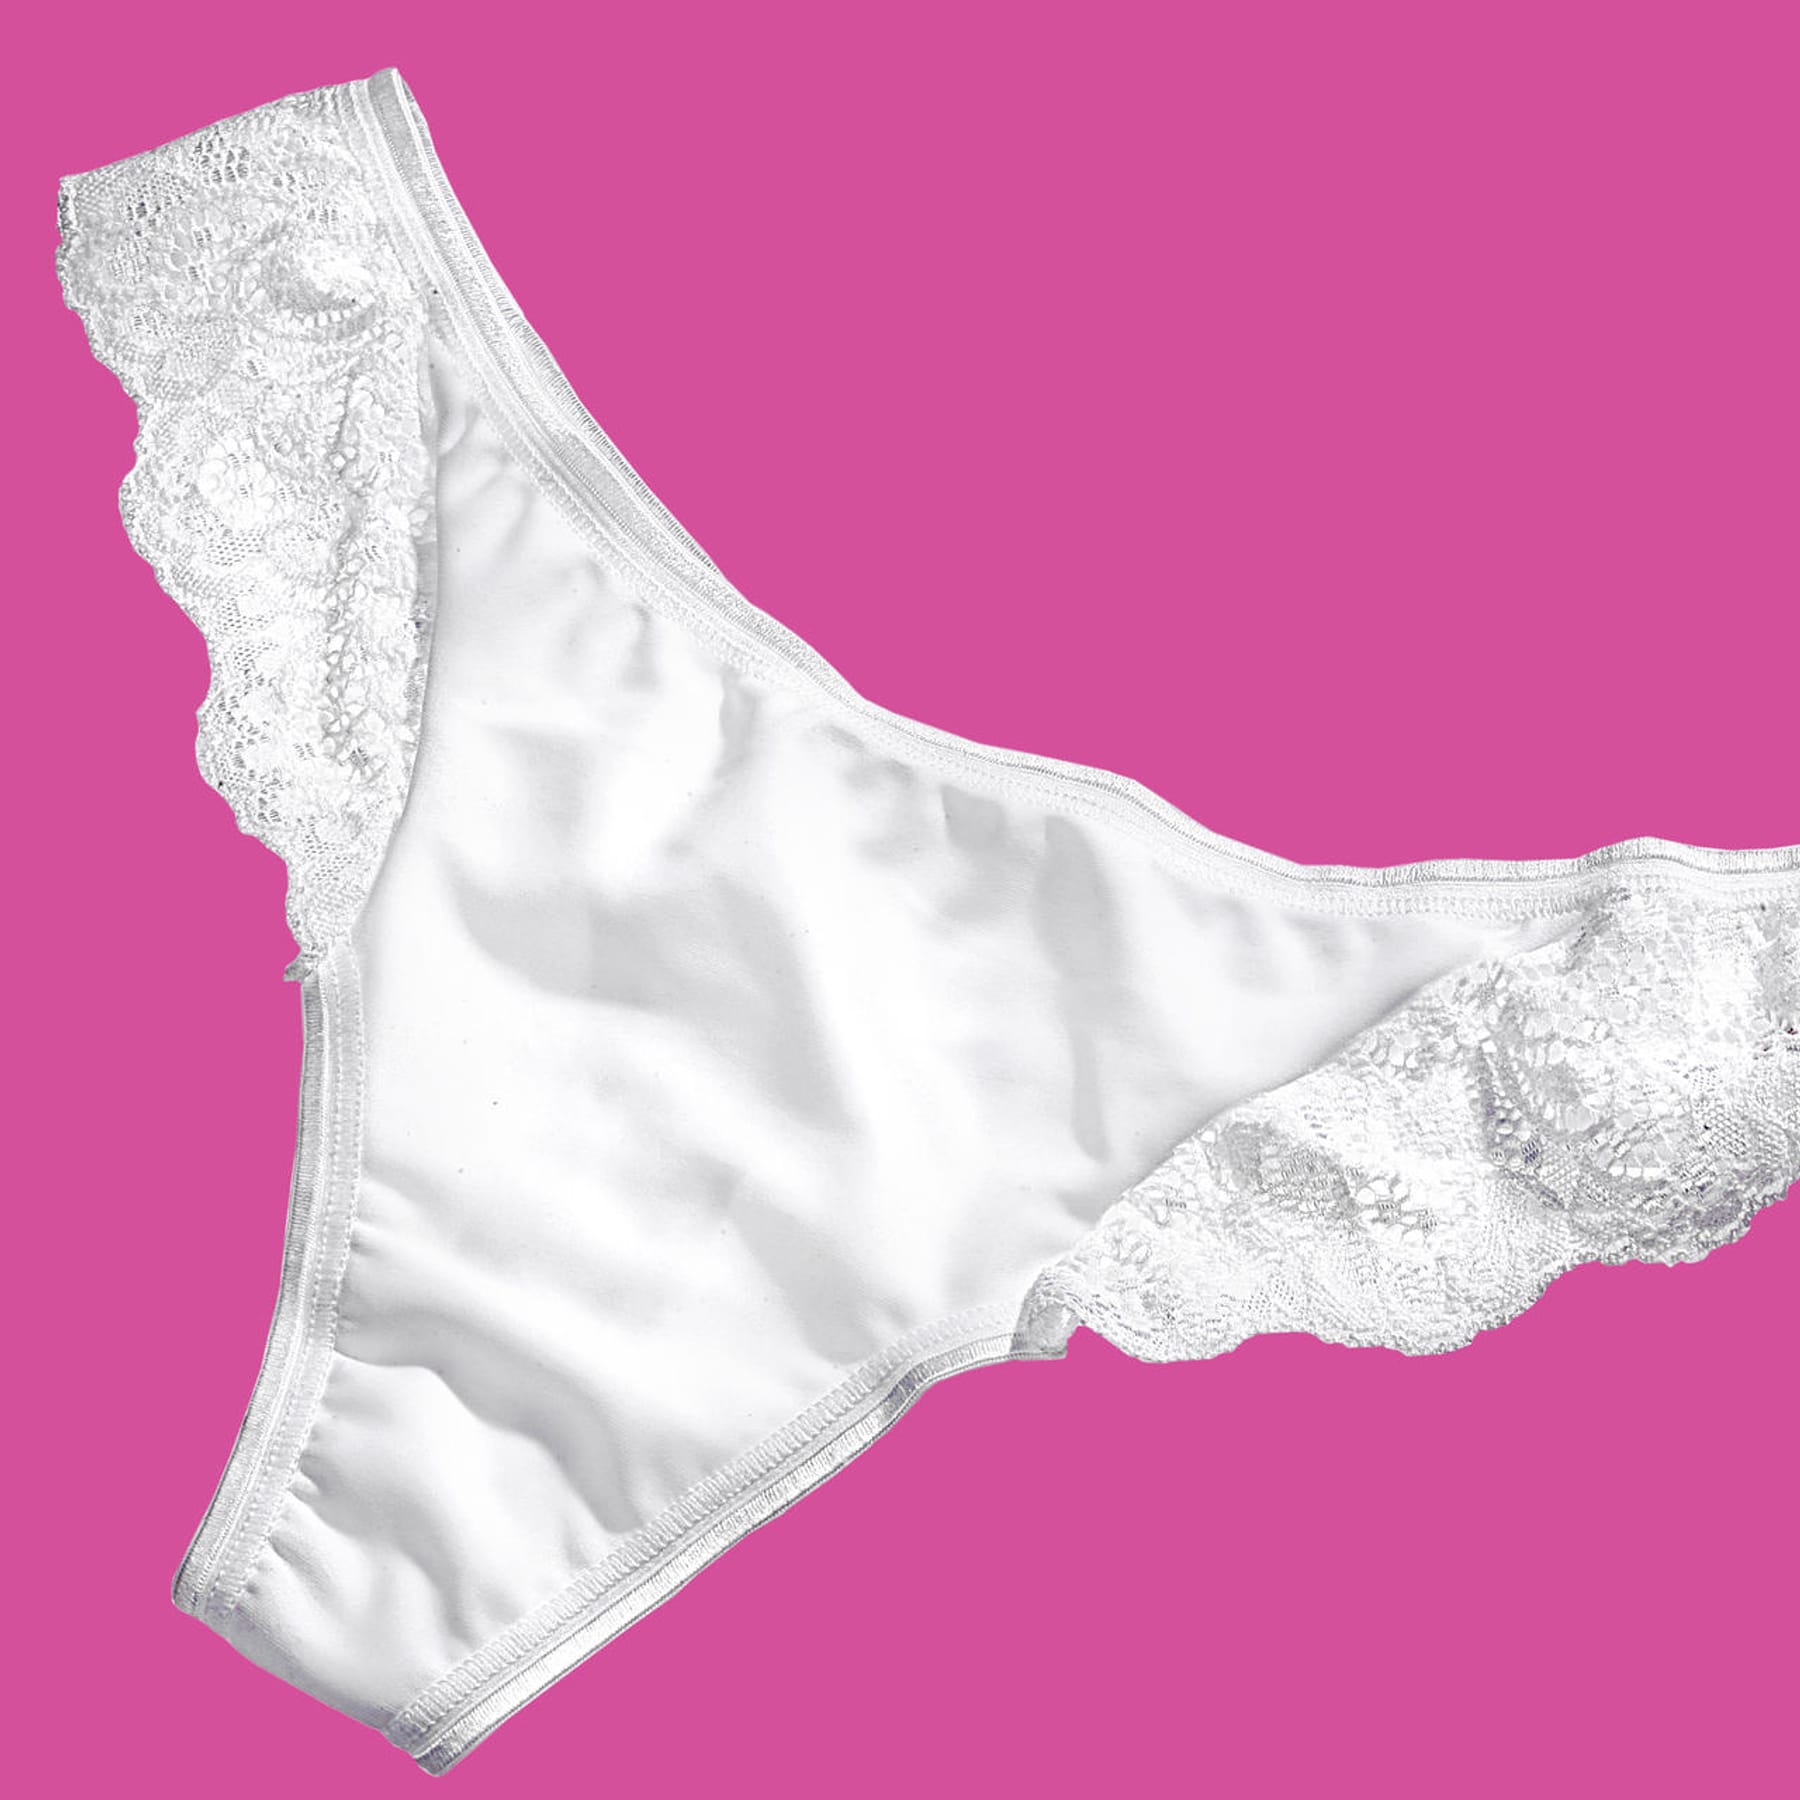 Zwickel in der Unterwäsche: Darum haben alle Damen-Slips ein Täschchen